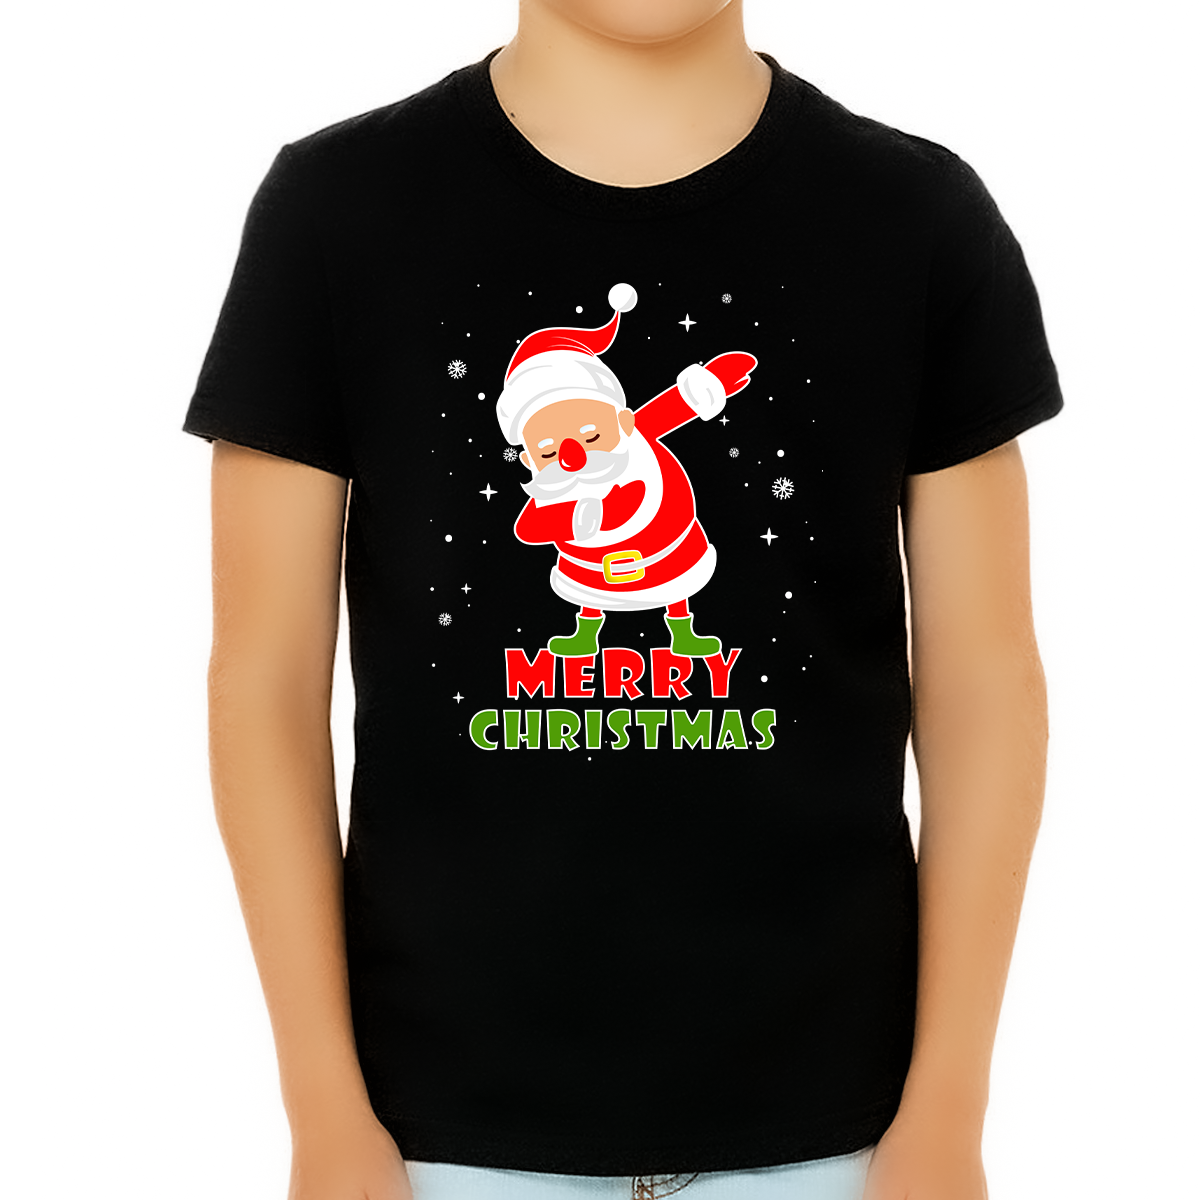 Boys Christmas Shirt Funny Christmas Shirts for Boys Dabbing Santa Christmas Shirts for Kids